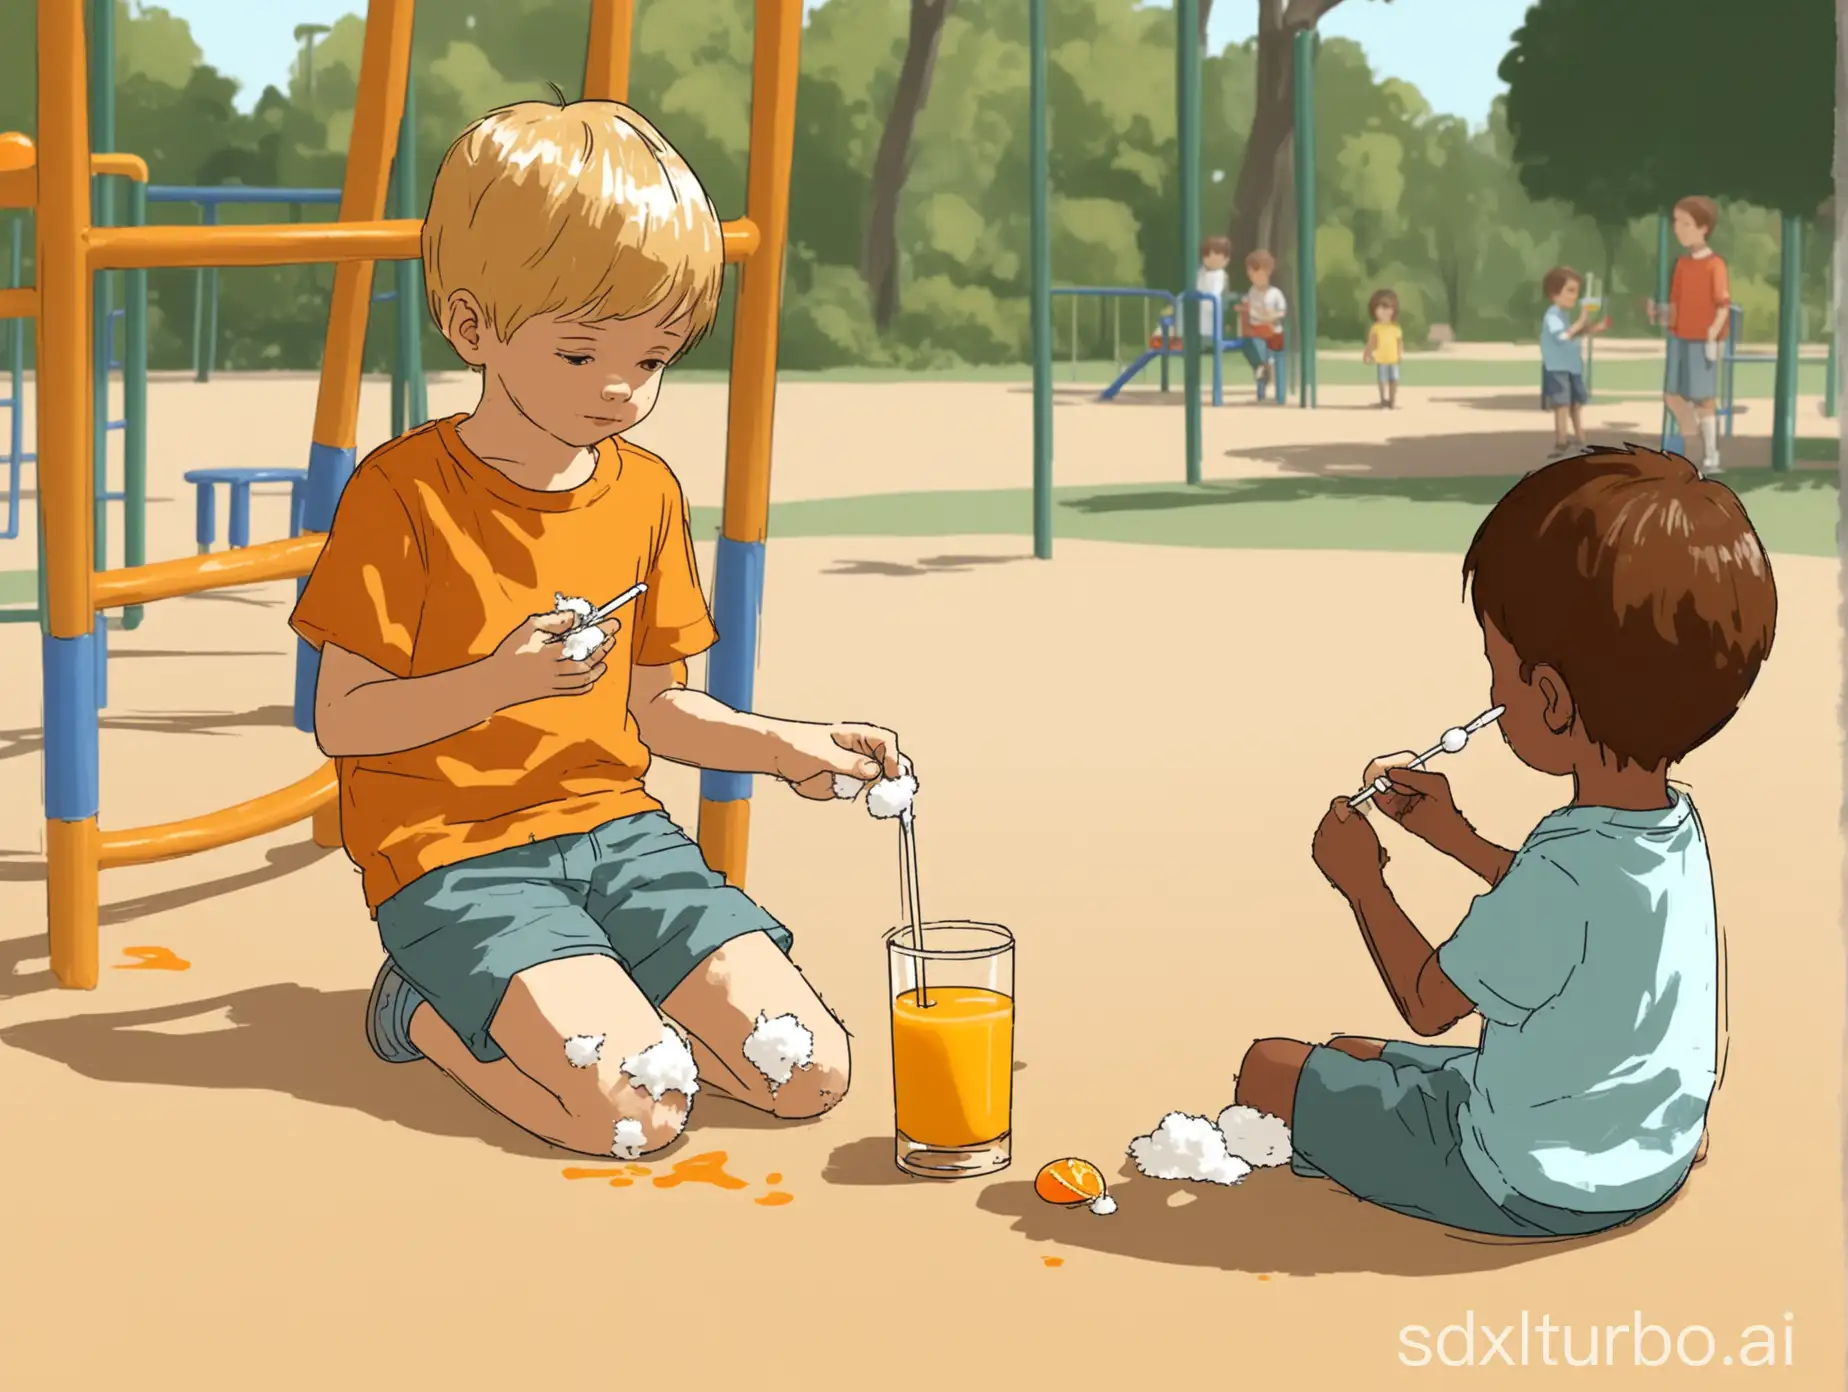 画一张在操场上，一个小男孩左手拿着碘伏，右手拿着棉签处理他自己腿上的小擦痕，旁边不远处一个小女孩手上拿着一杯橙汁关心地看着这个小男孩的图片，要二次元动漫风格的。